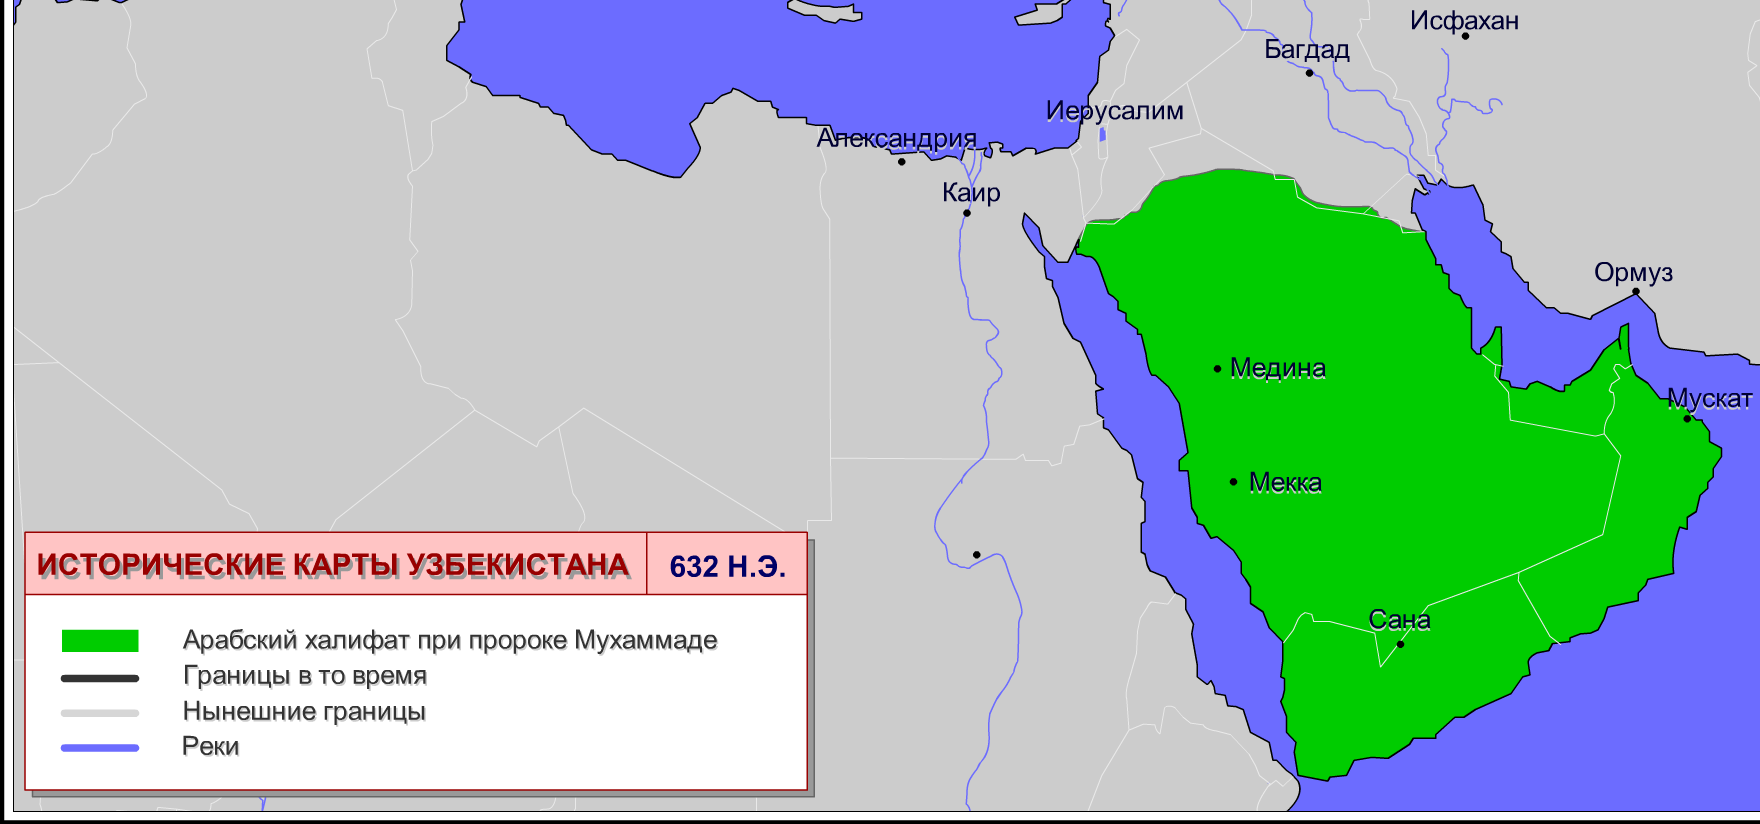 Арабский халифат багдад на карте. Династия Аббасидов Багдадский халифат. Арабский халифат в 632 году. Границы праведного халифата. Праведный халифат карта.